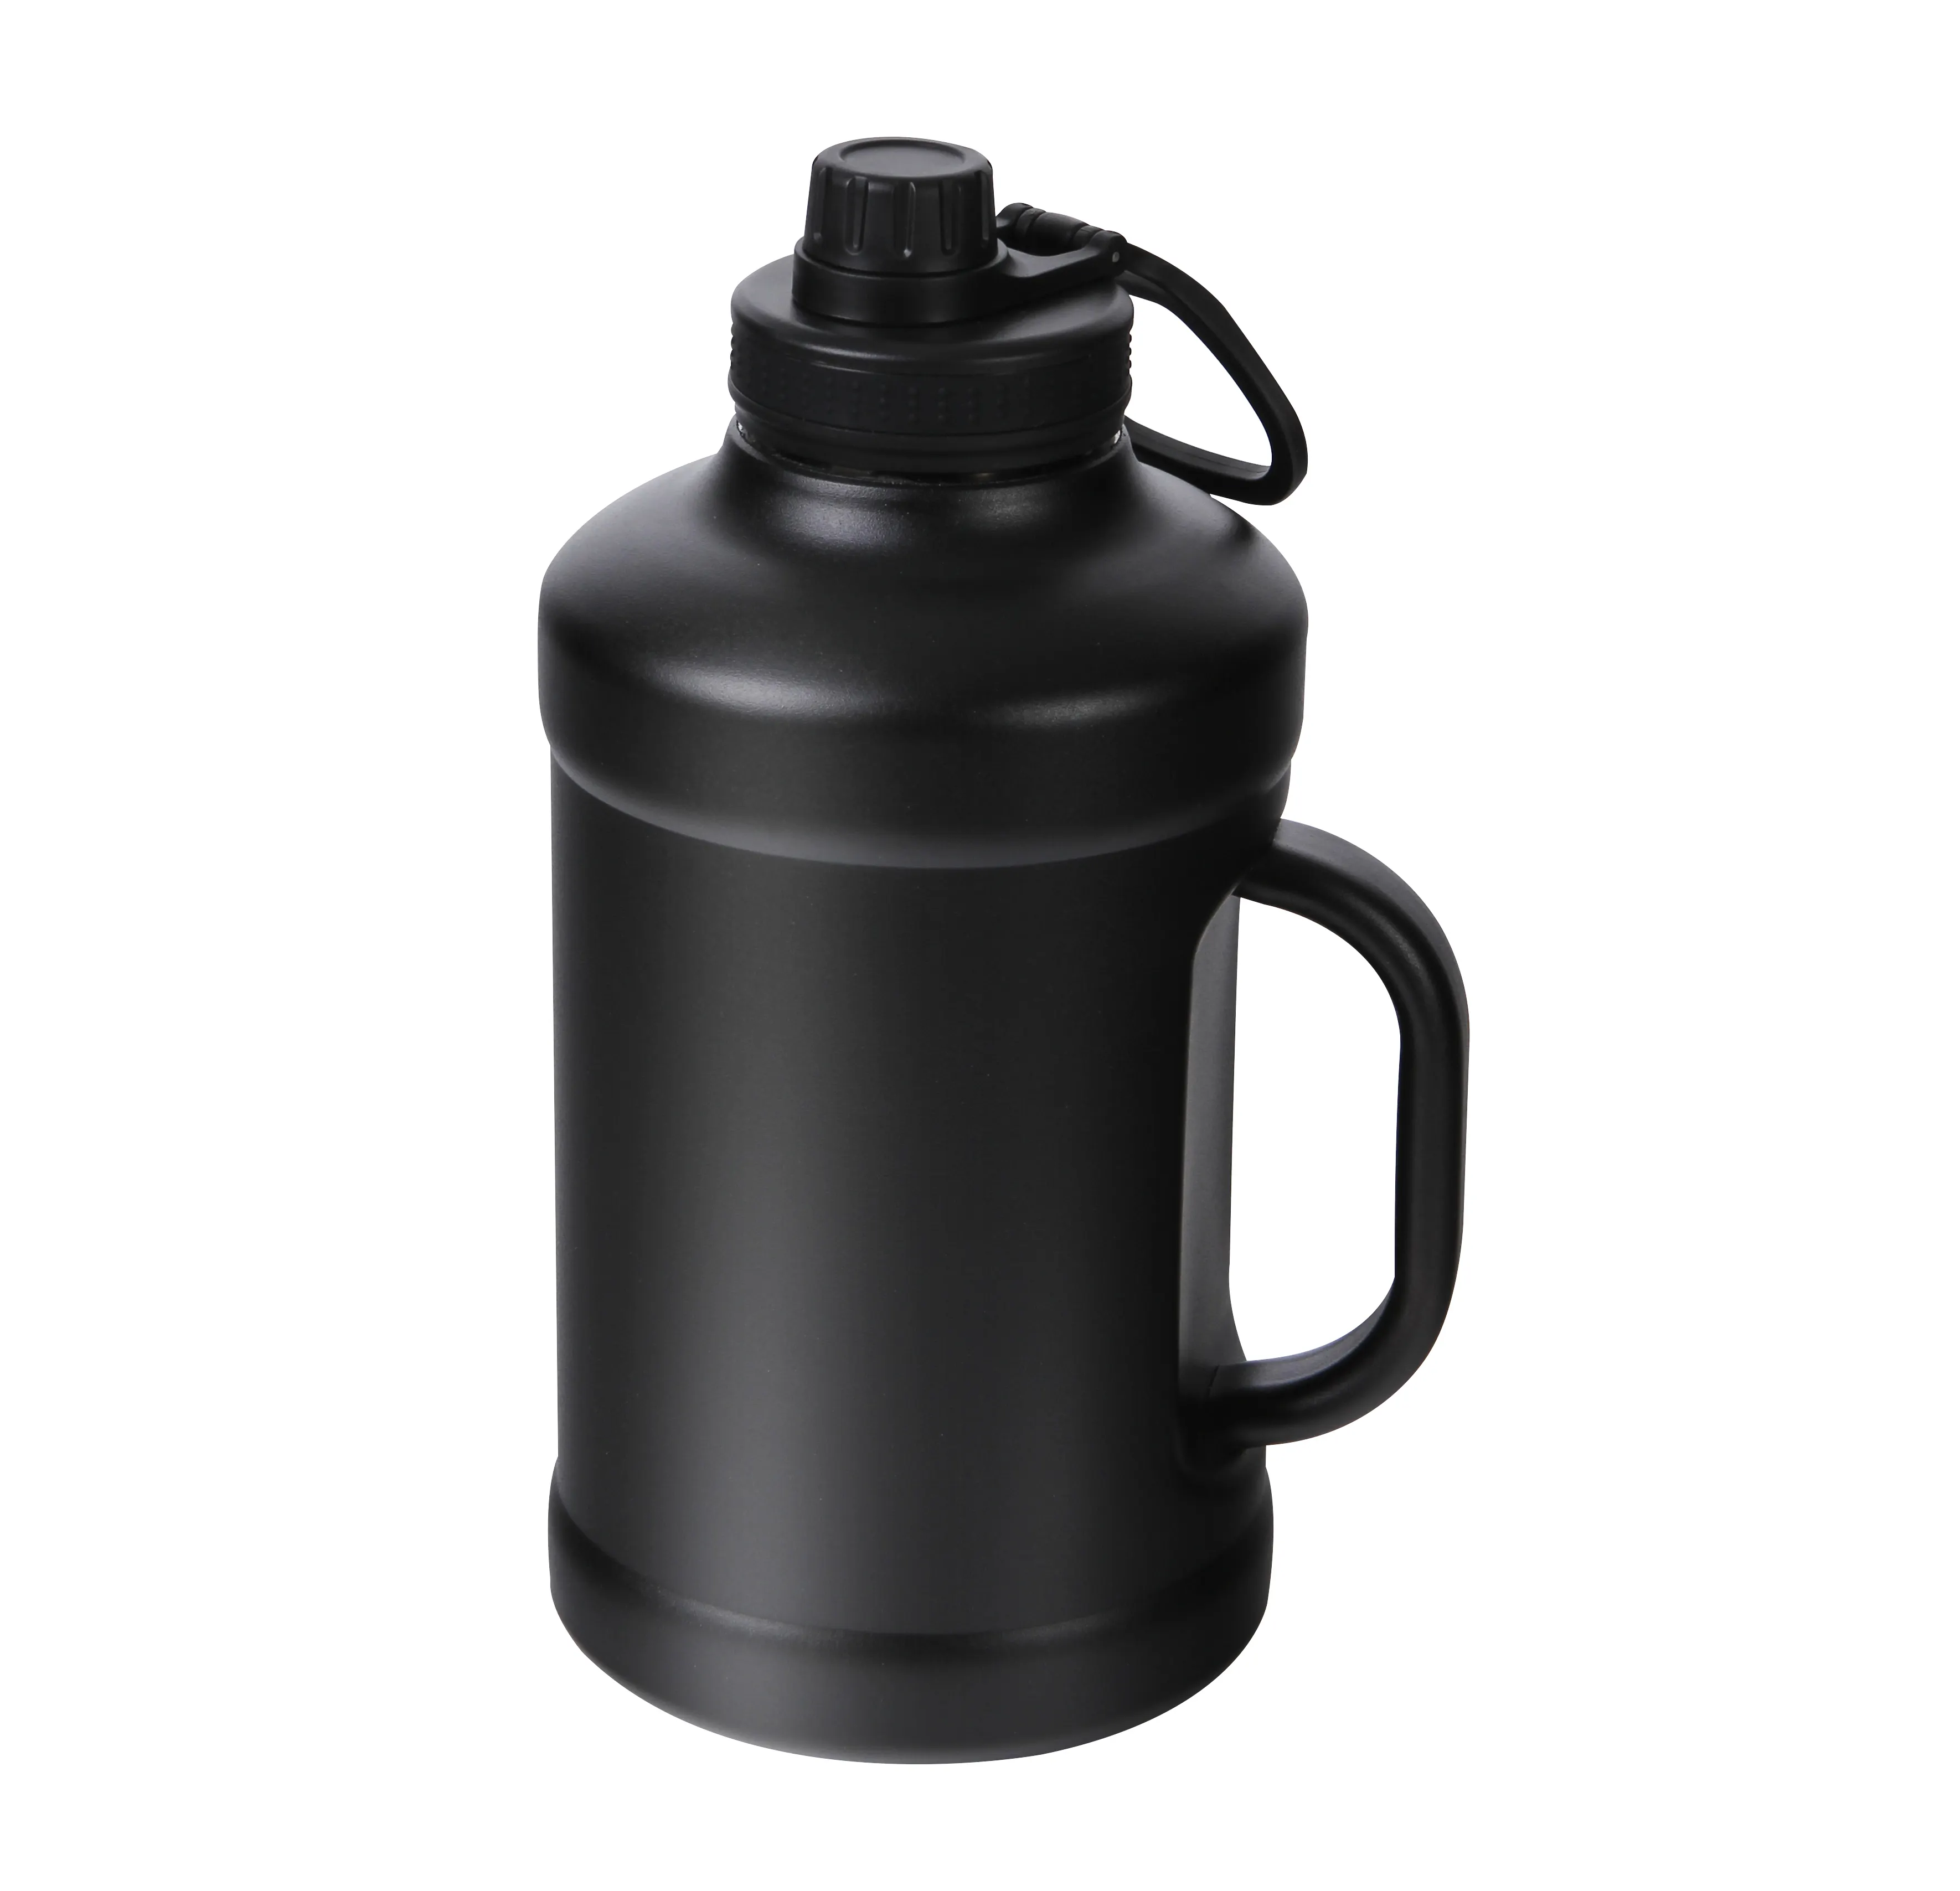 Özel logo ile BPA galon büyük su sporları spor salonu su şişesi kollu BPA ücretsiz 100% sızdırmaz şişeler yarım galon